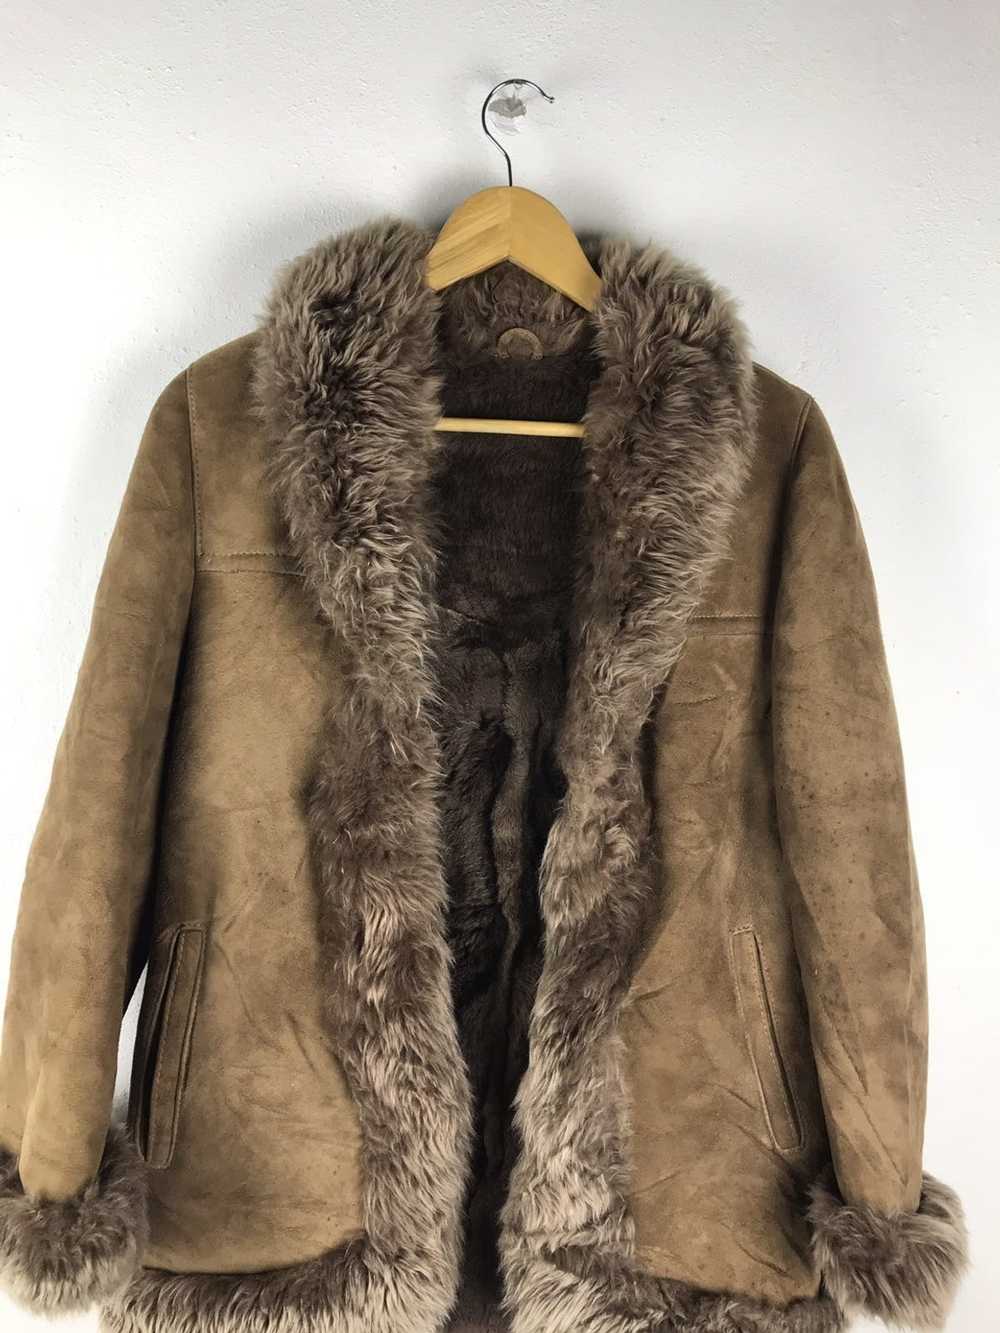 Japanese Brand × Leather Jacket × Mink Fur Coat H… - image 3